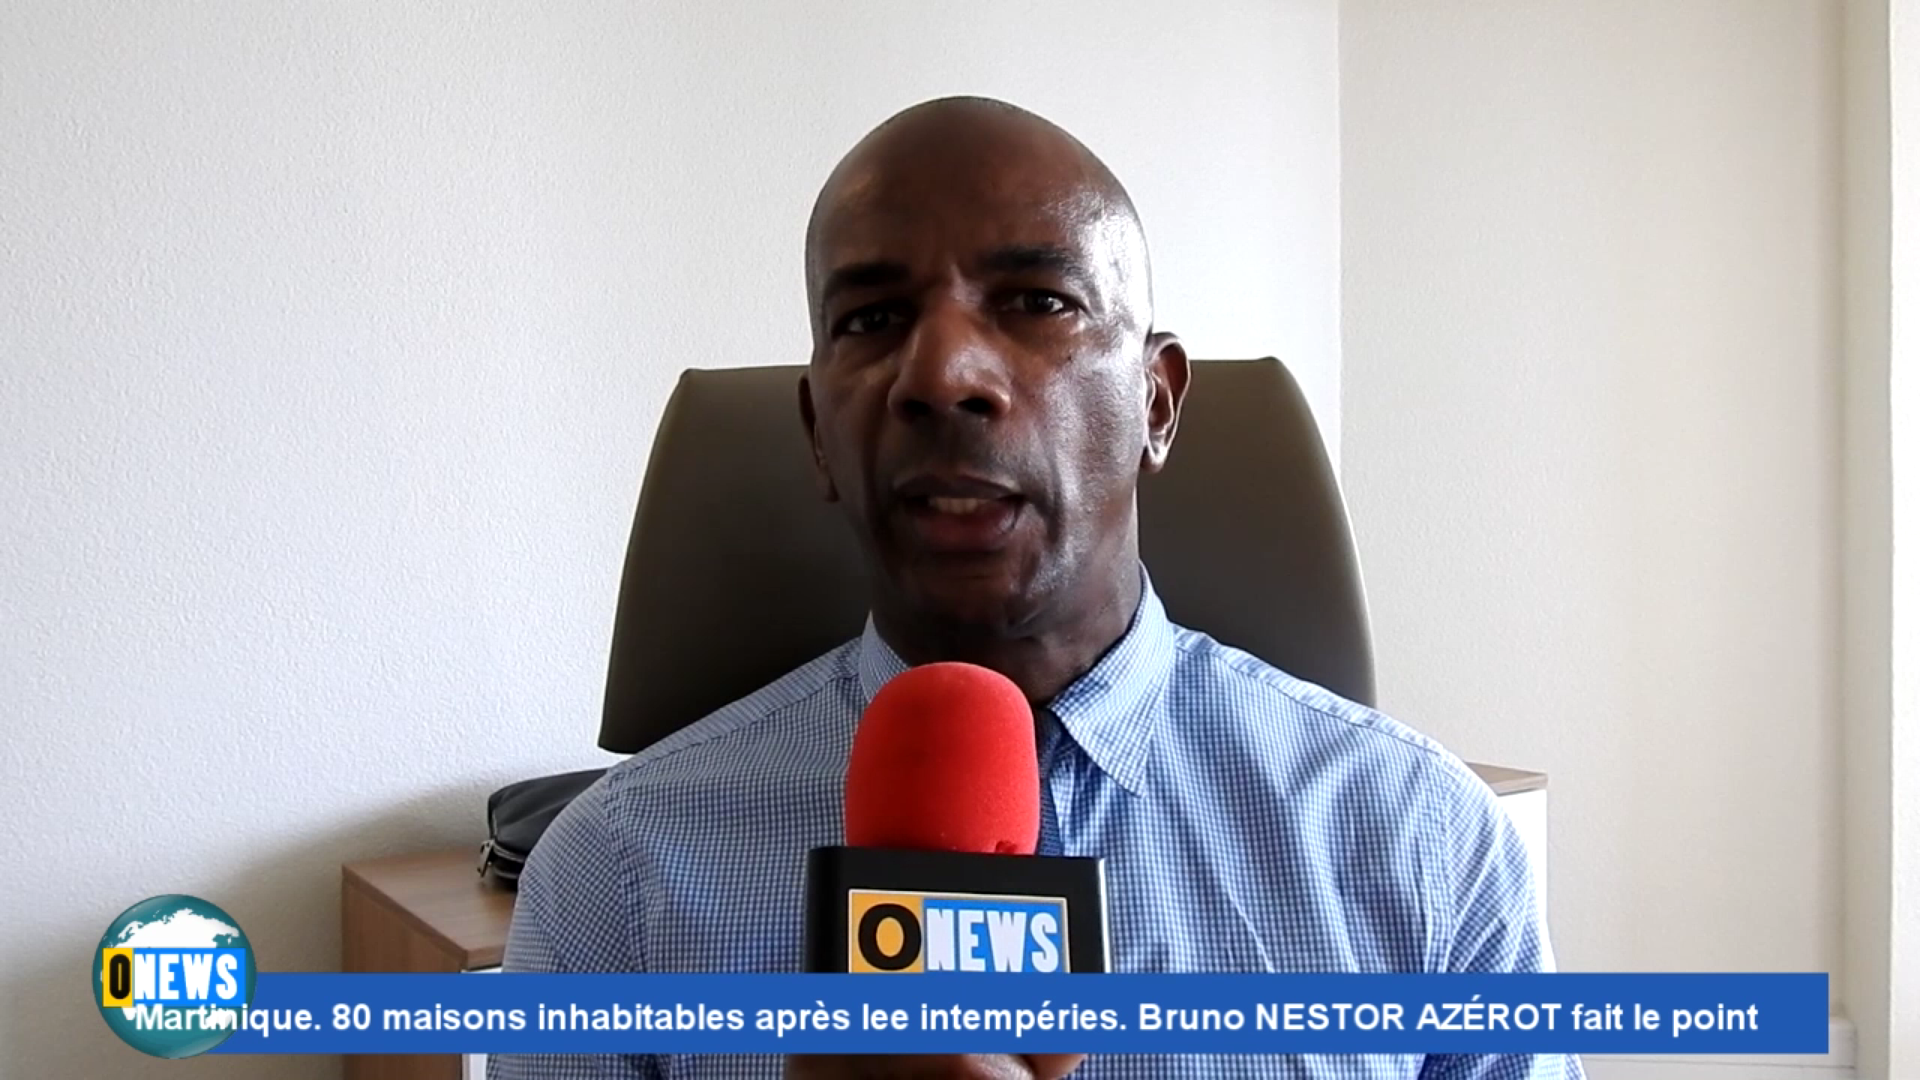 [Vidéo] Onews Martinique. 80 maisons inhabitables suite aux intempéries. Interview du Maire de Sainte Marie